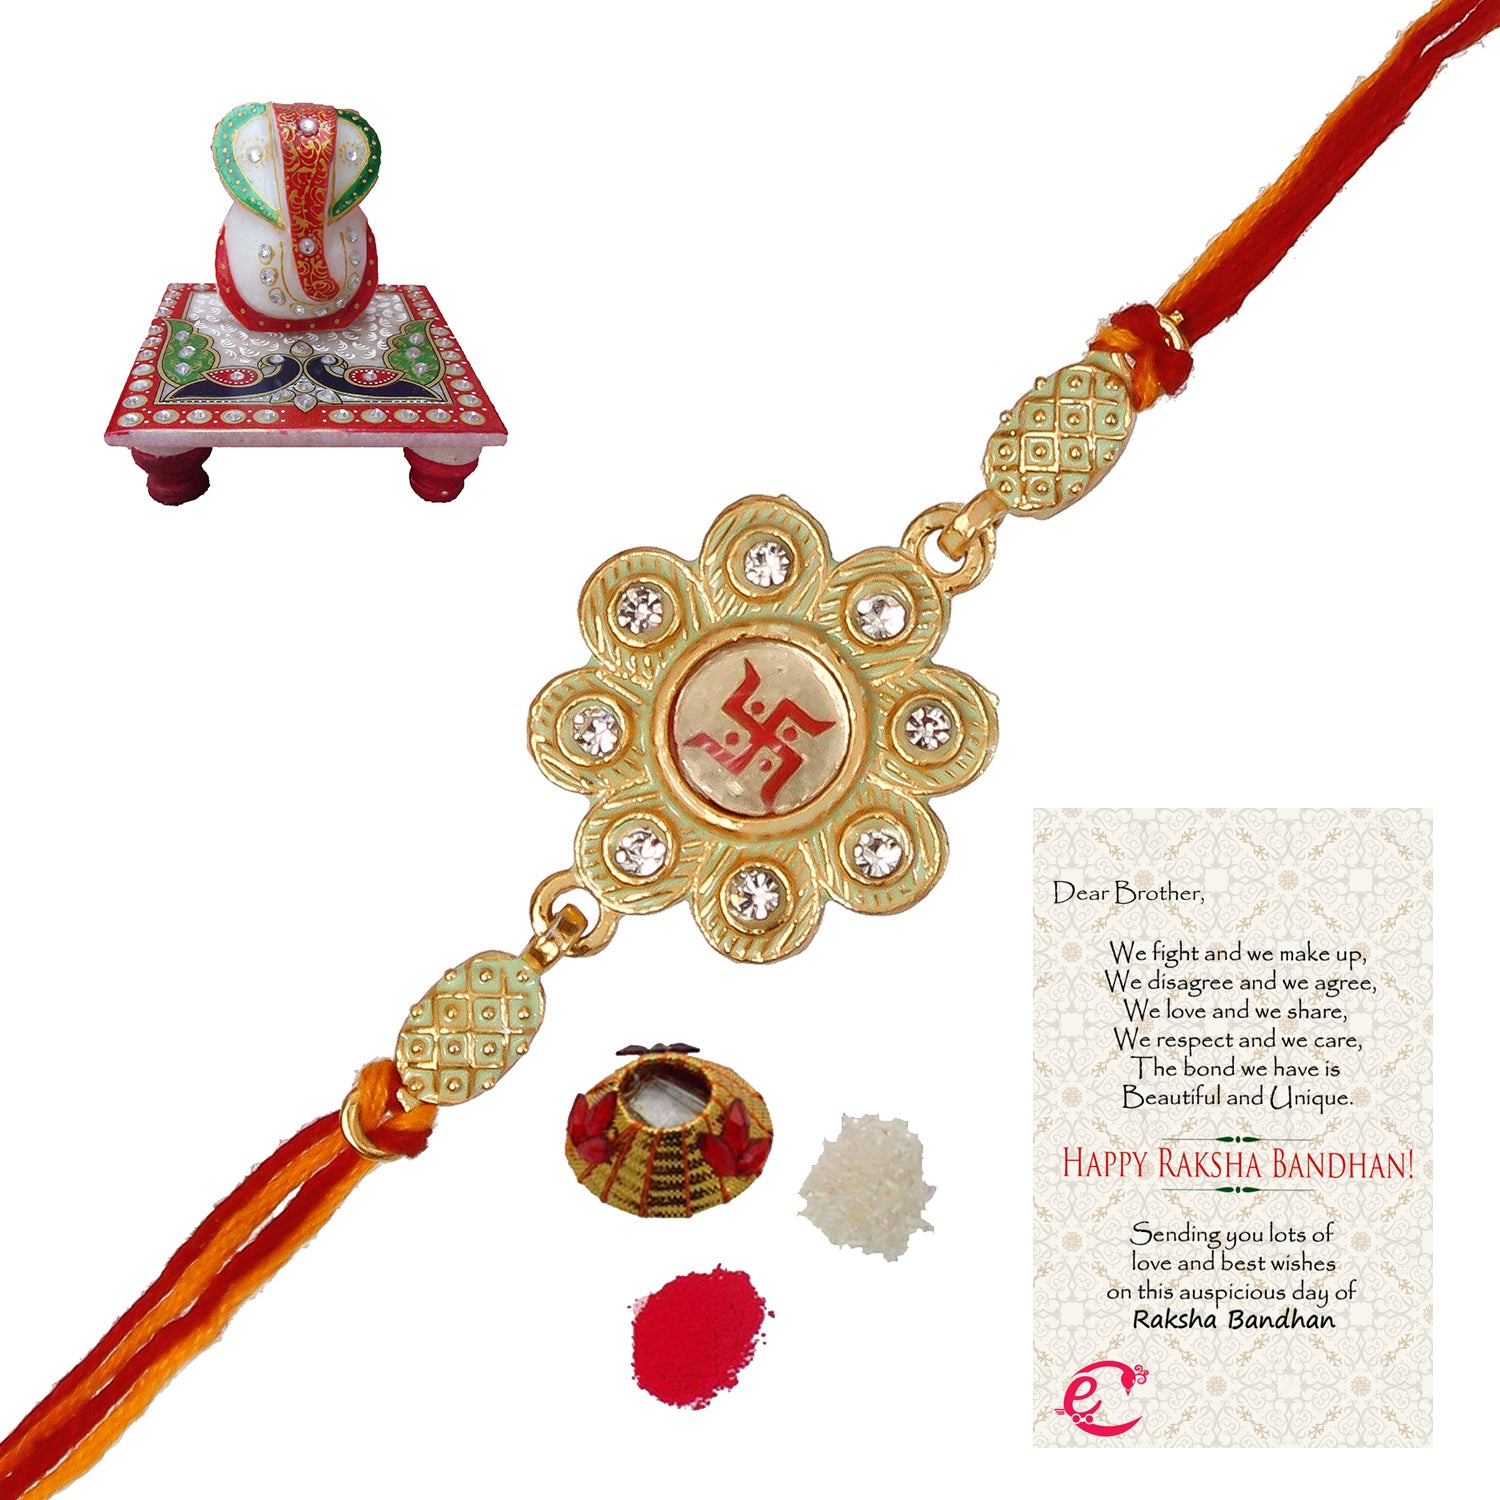 Designer Religious Swastik Rakhi with Lord Ganesha Marble Chowki and Roli Tikka Matki, Best Wishes Greeting Card